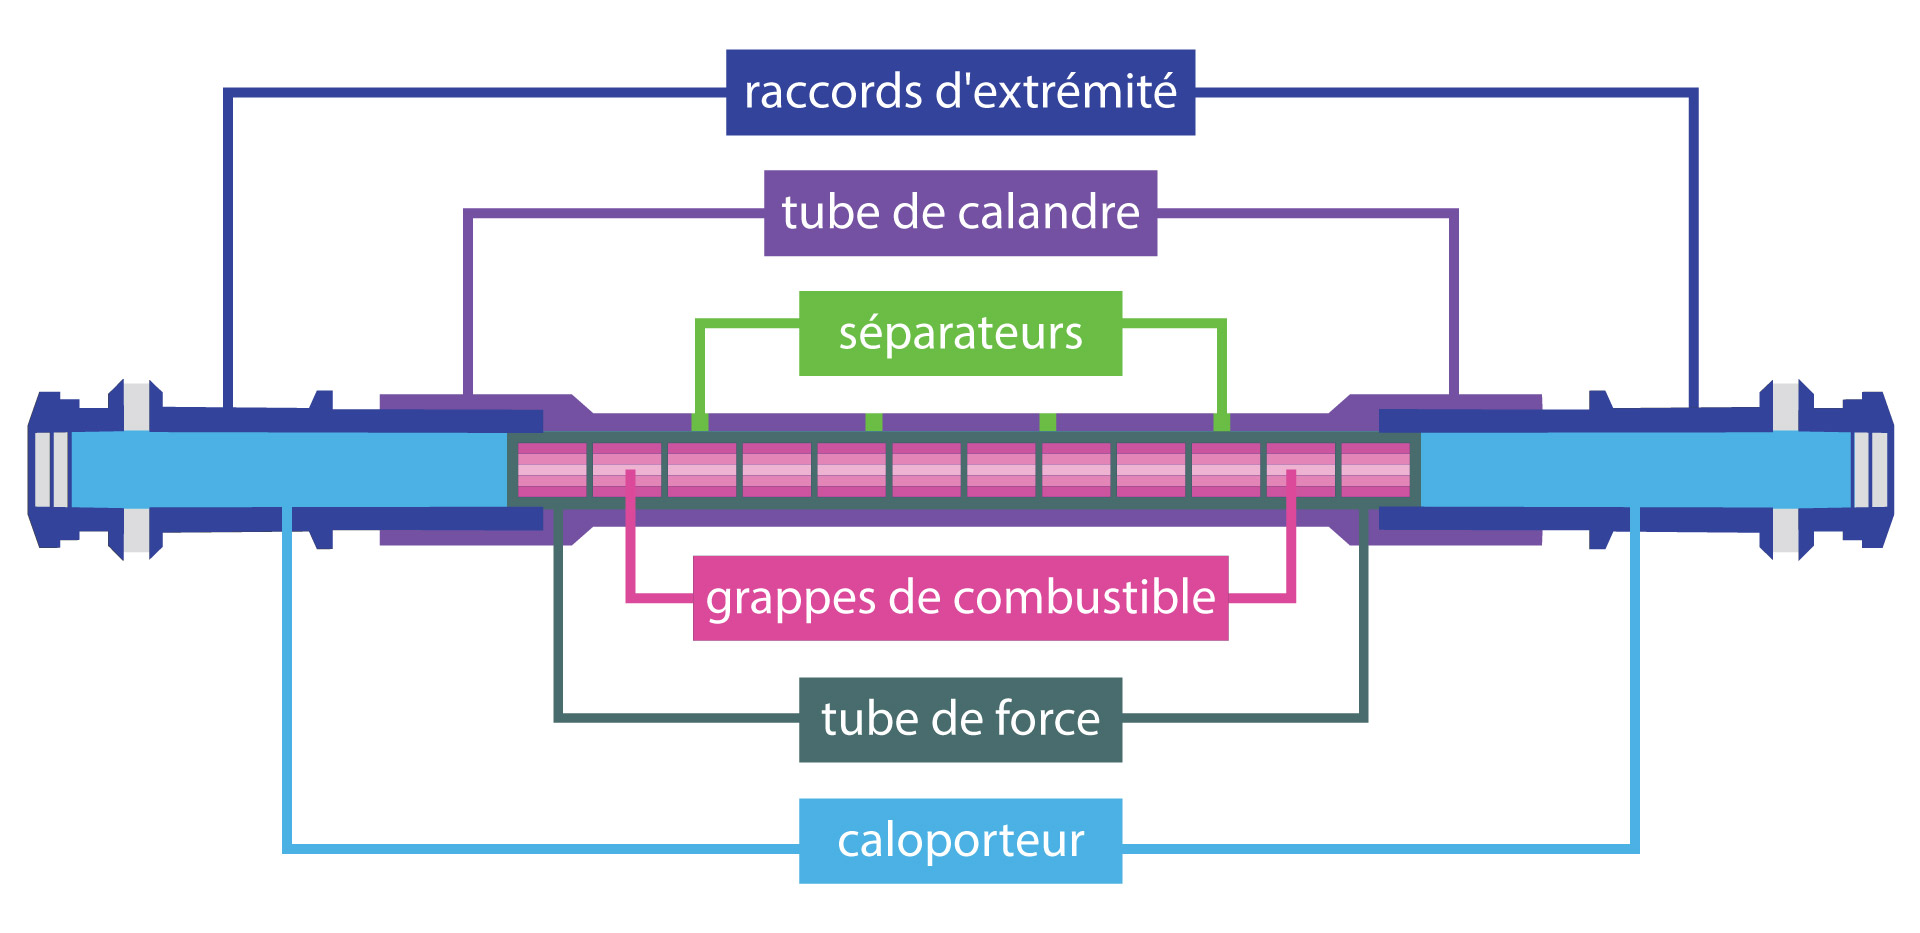 À l’intérieur de chaque réacteur nucléaire CANDU au Canada se trouvent plusieurs centaines de canaux de combustible. Chaque canal de combustible est constitué de différentes parties. À chaque extrémité des tubes de force se trouvent les raccords d’extrémité. Les tubes de force contiennent les grappes de combustible qui servent à produire de la chaleur, ainsi que le caloporteur. À l’extérieur du tube de force se trouve le tube de calandre qui est séparé du tube de force par de nombreux séparateurs.